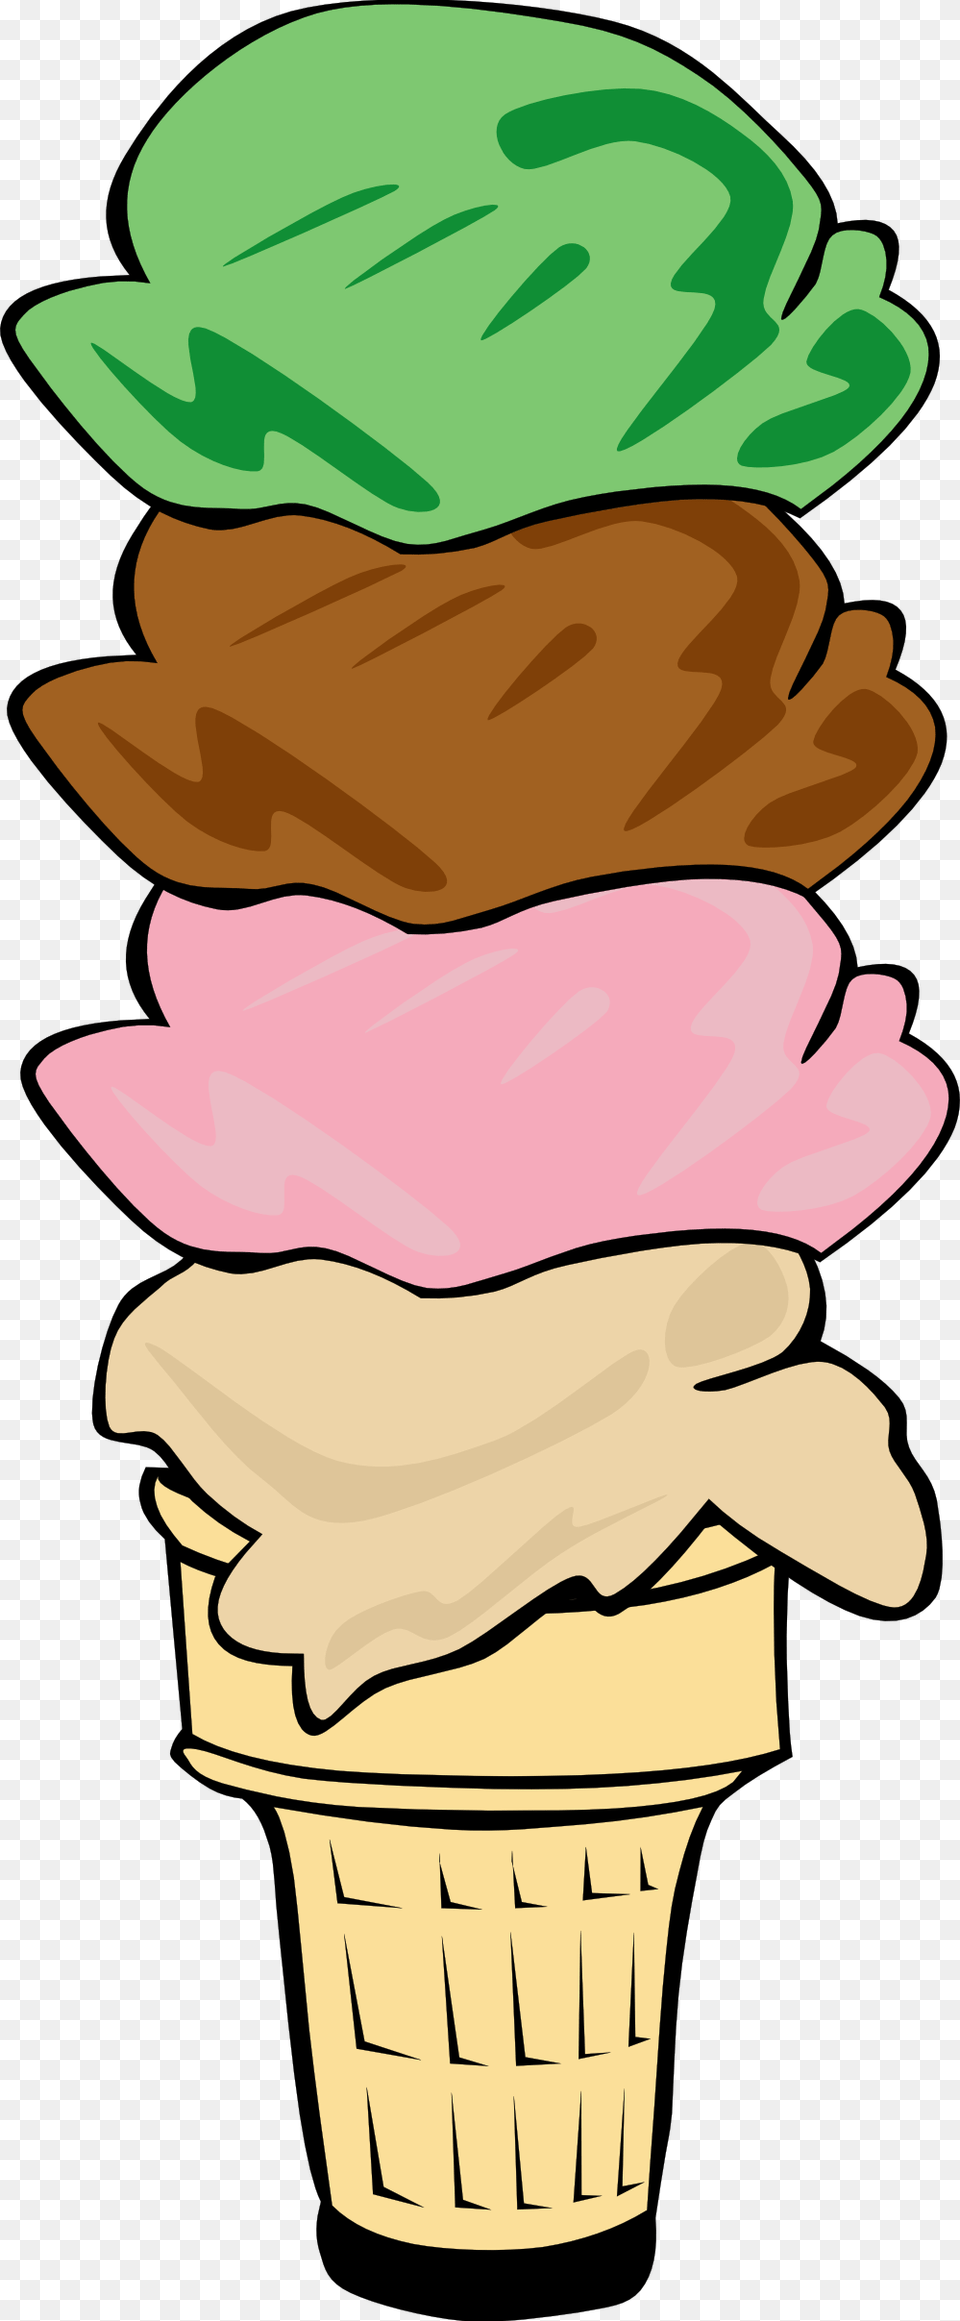 Clip Art Ice Cream Cone, Dessert, Food, Ice Cream, Soft Serve Ice Cream Png Image